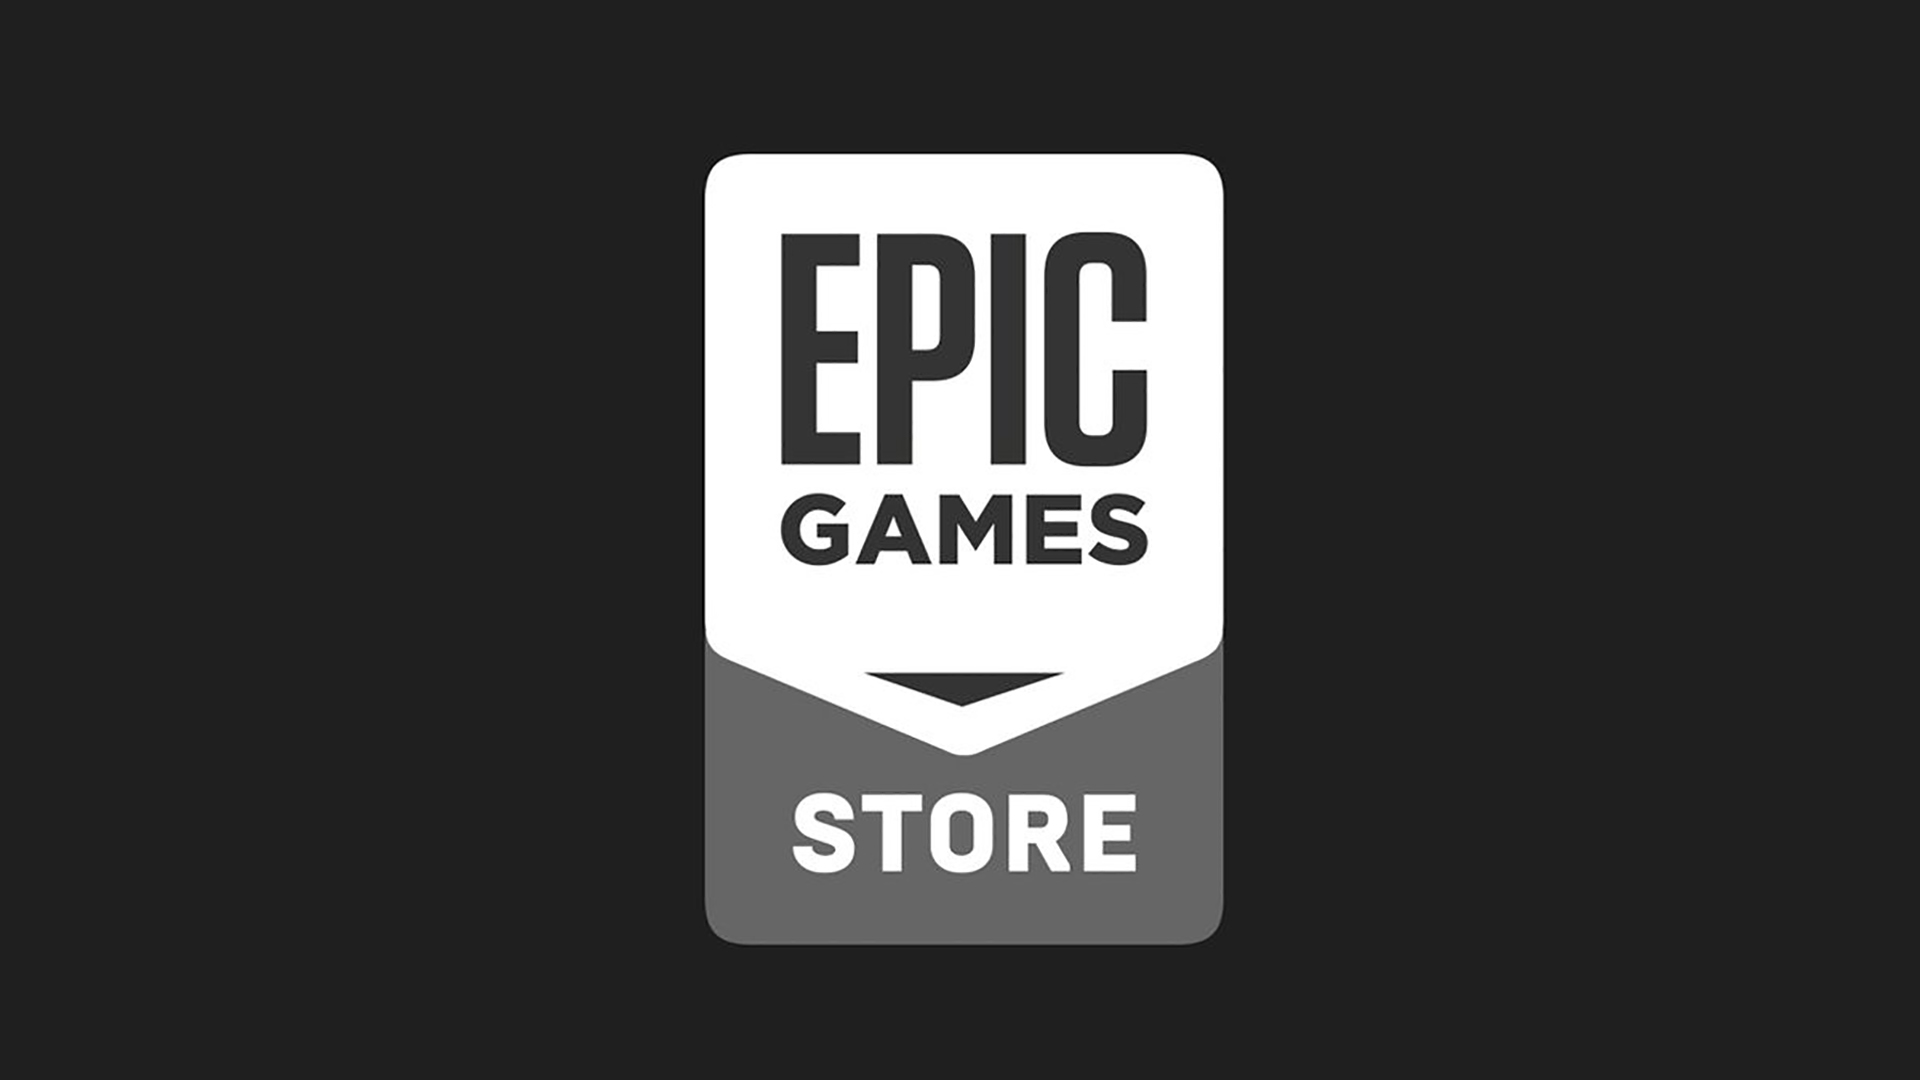 Två gratis spel från Epic är live - butiken lägger till en extra trippel-A-titel till sortimentet